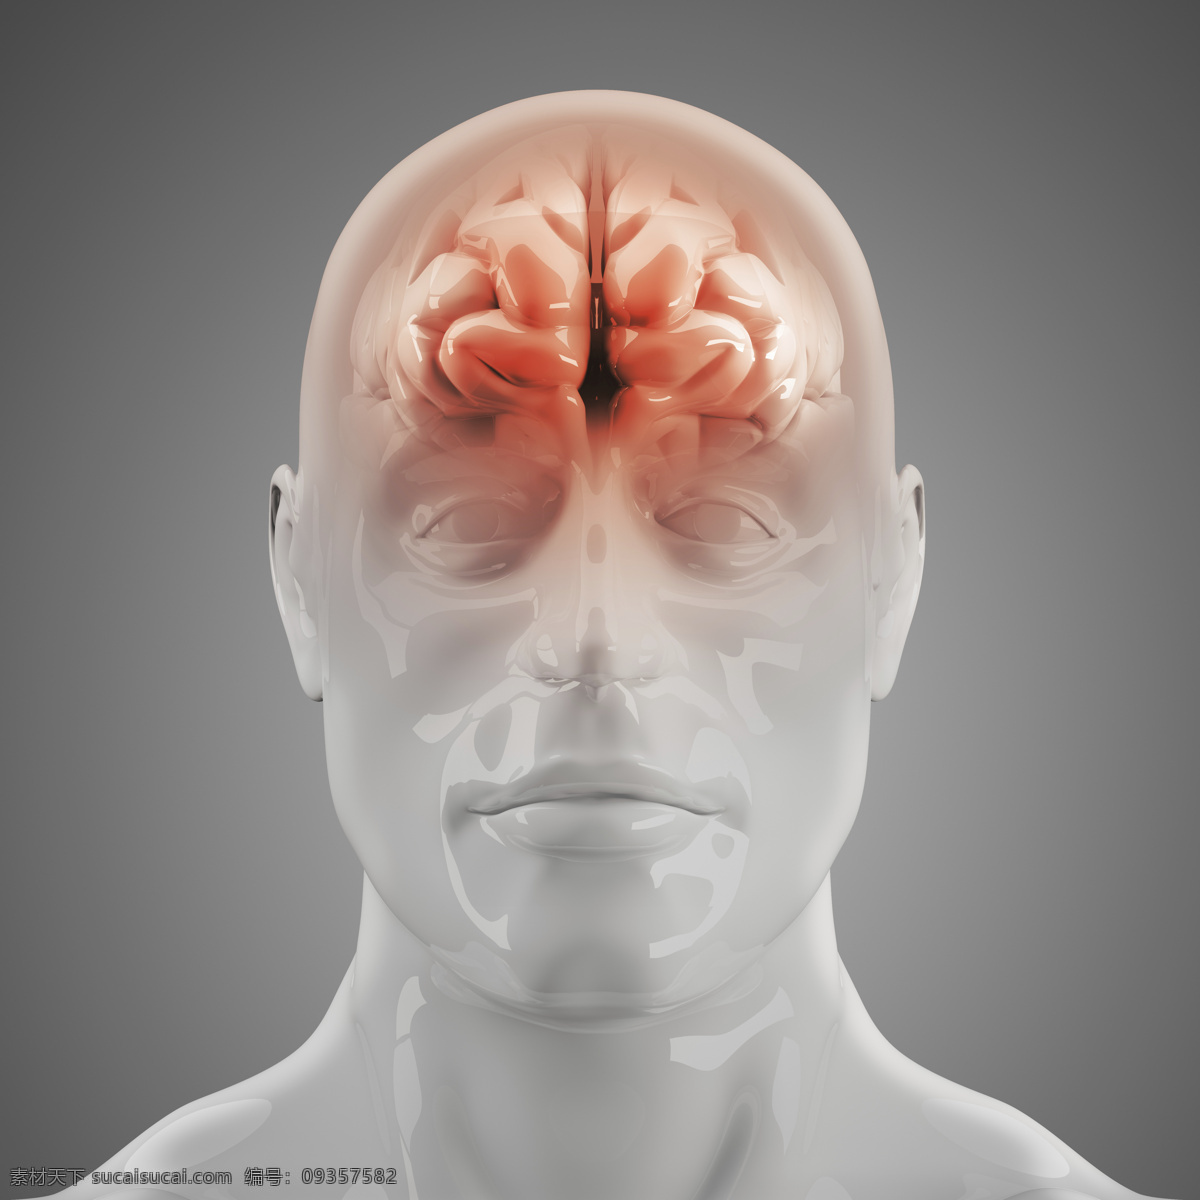 人体 脑部 x 光 图像 医疗主题 透视图 x光 医疗护理 现代科技